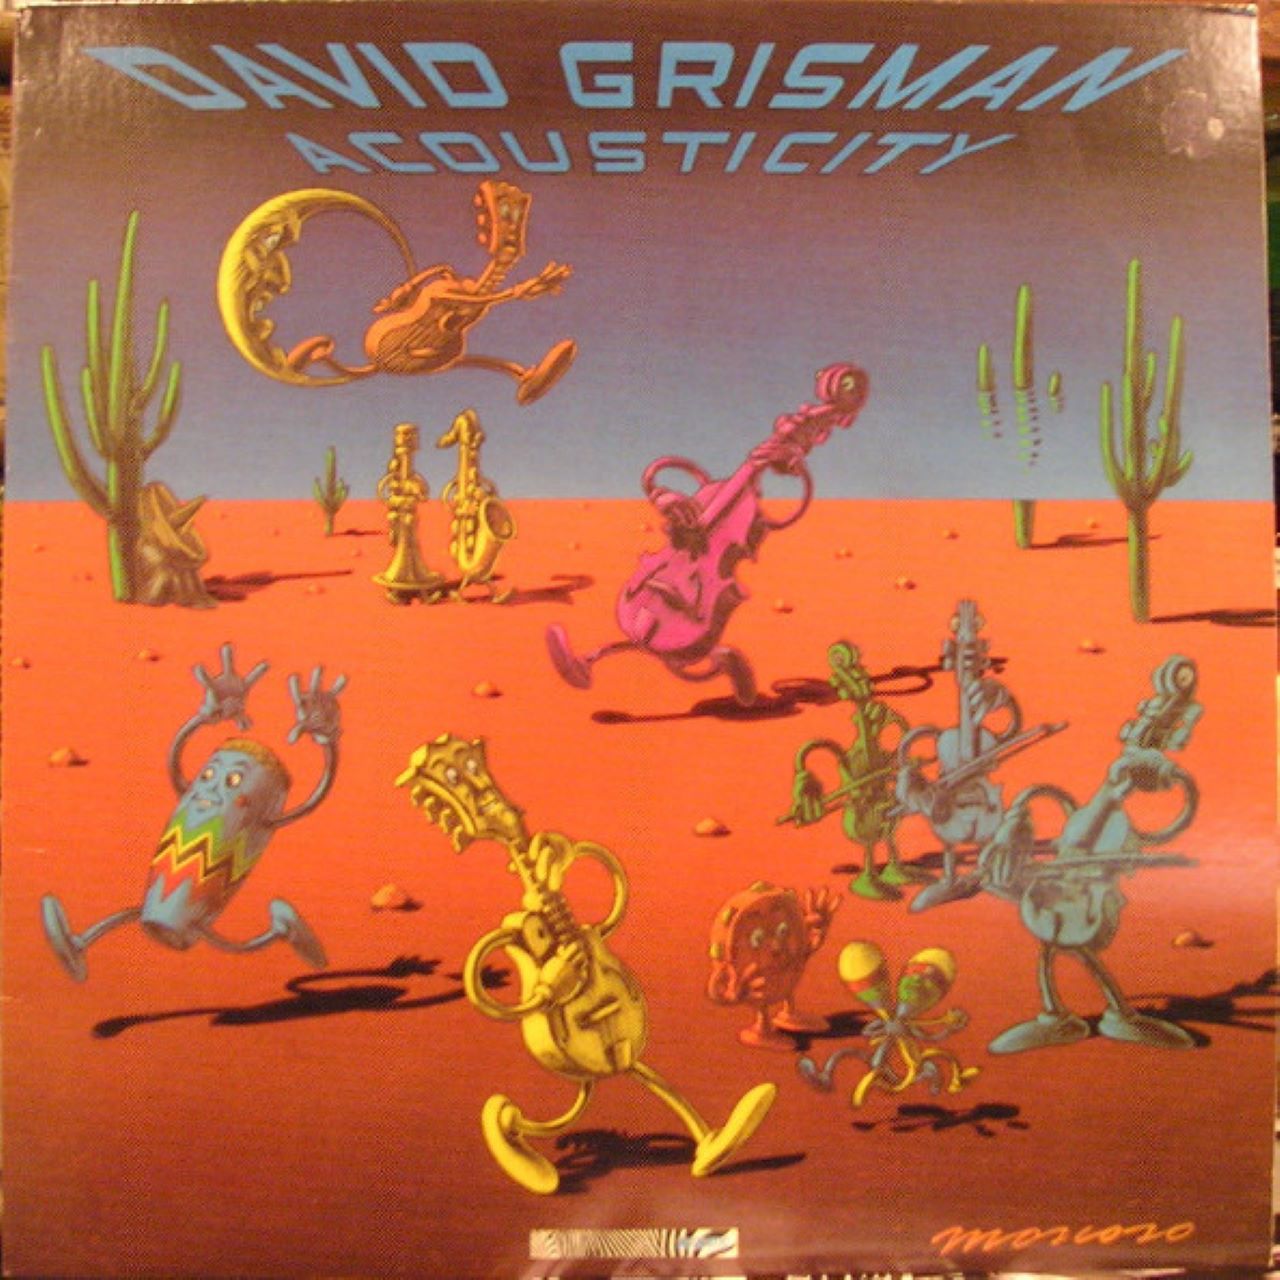 David Grisman - Acousticity cover album